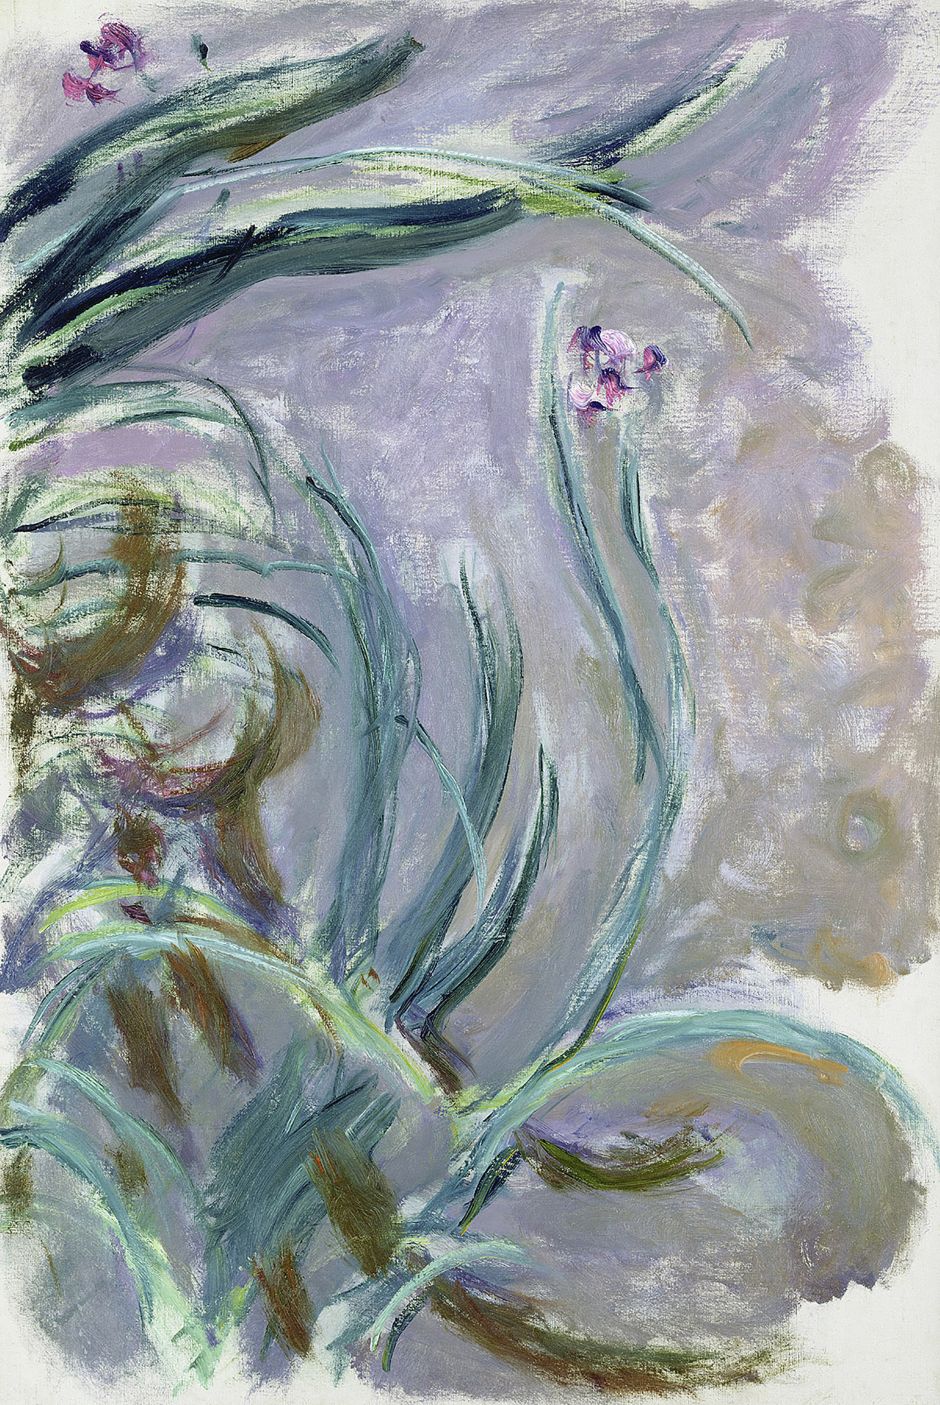 A partir del próximo 21 de septiembre, CentroCentro dedicará una exposición a Claude Monet formada por más de cincuenta obras maestras | Tu Gran Viaje